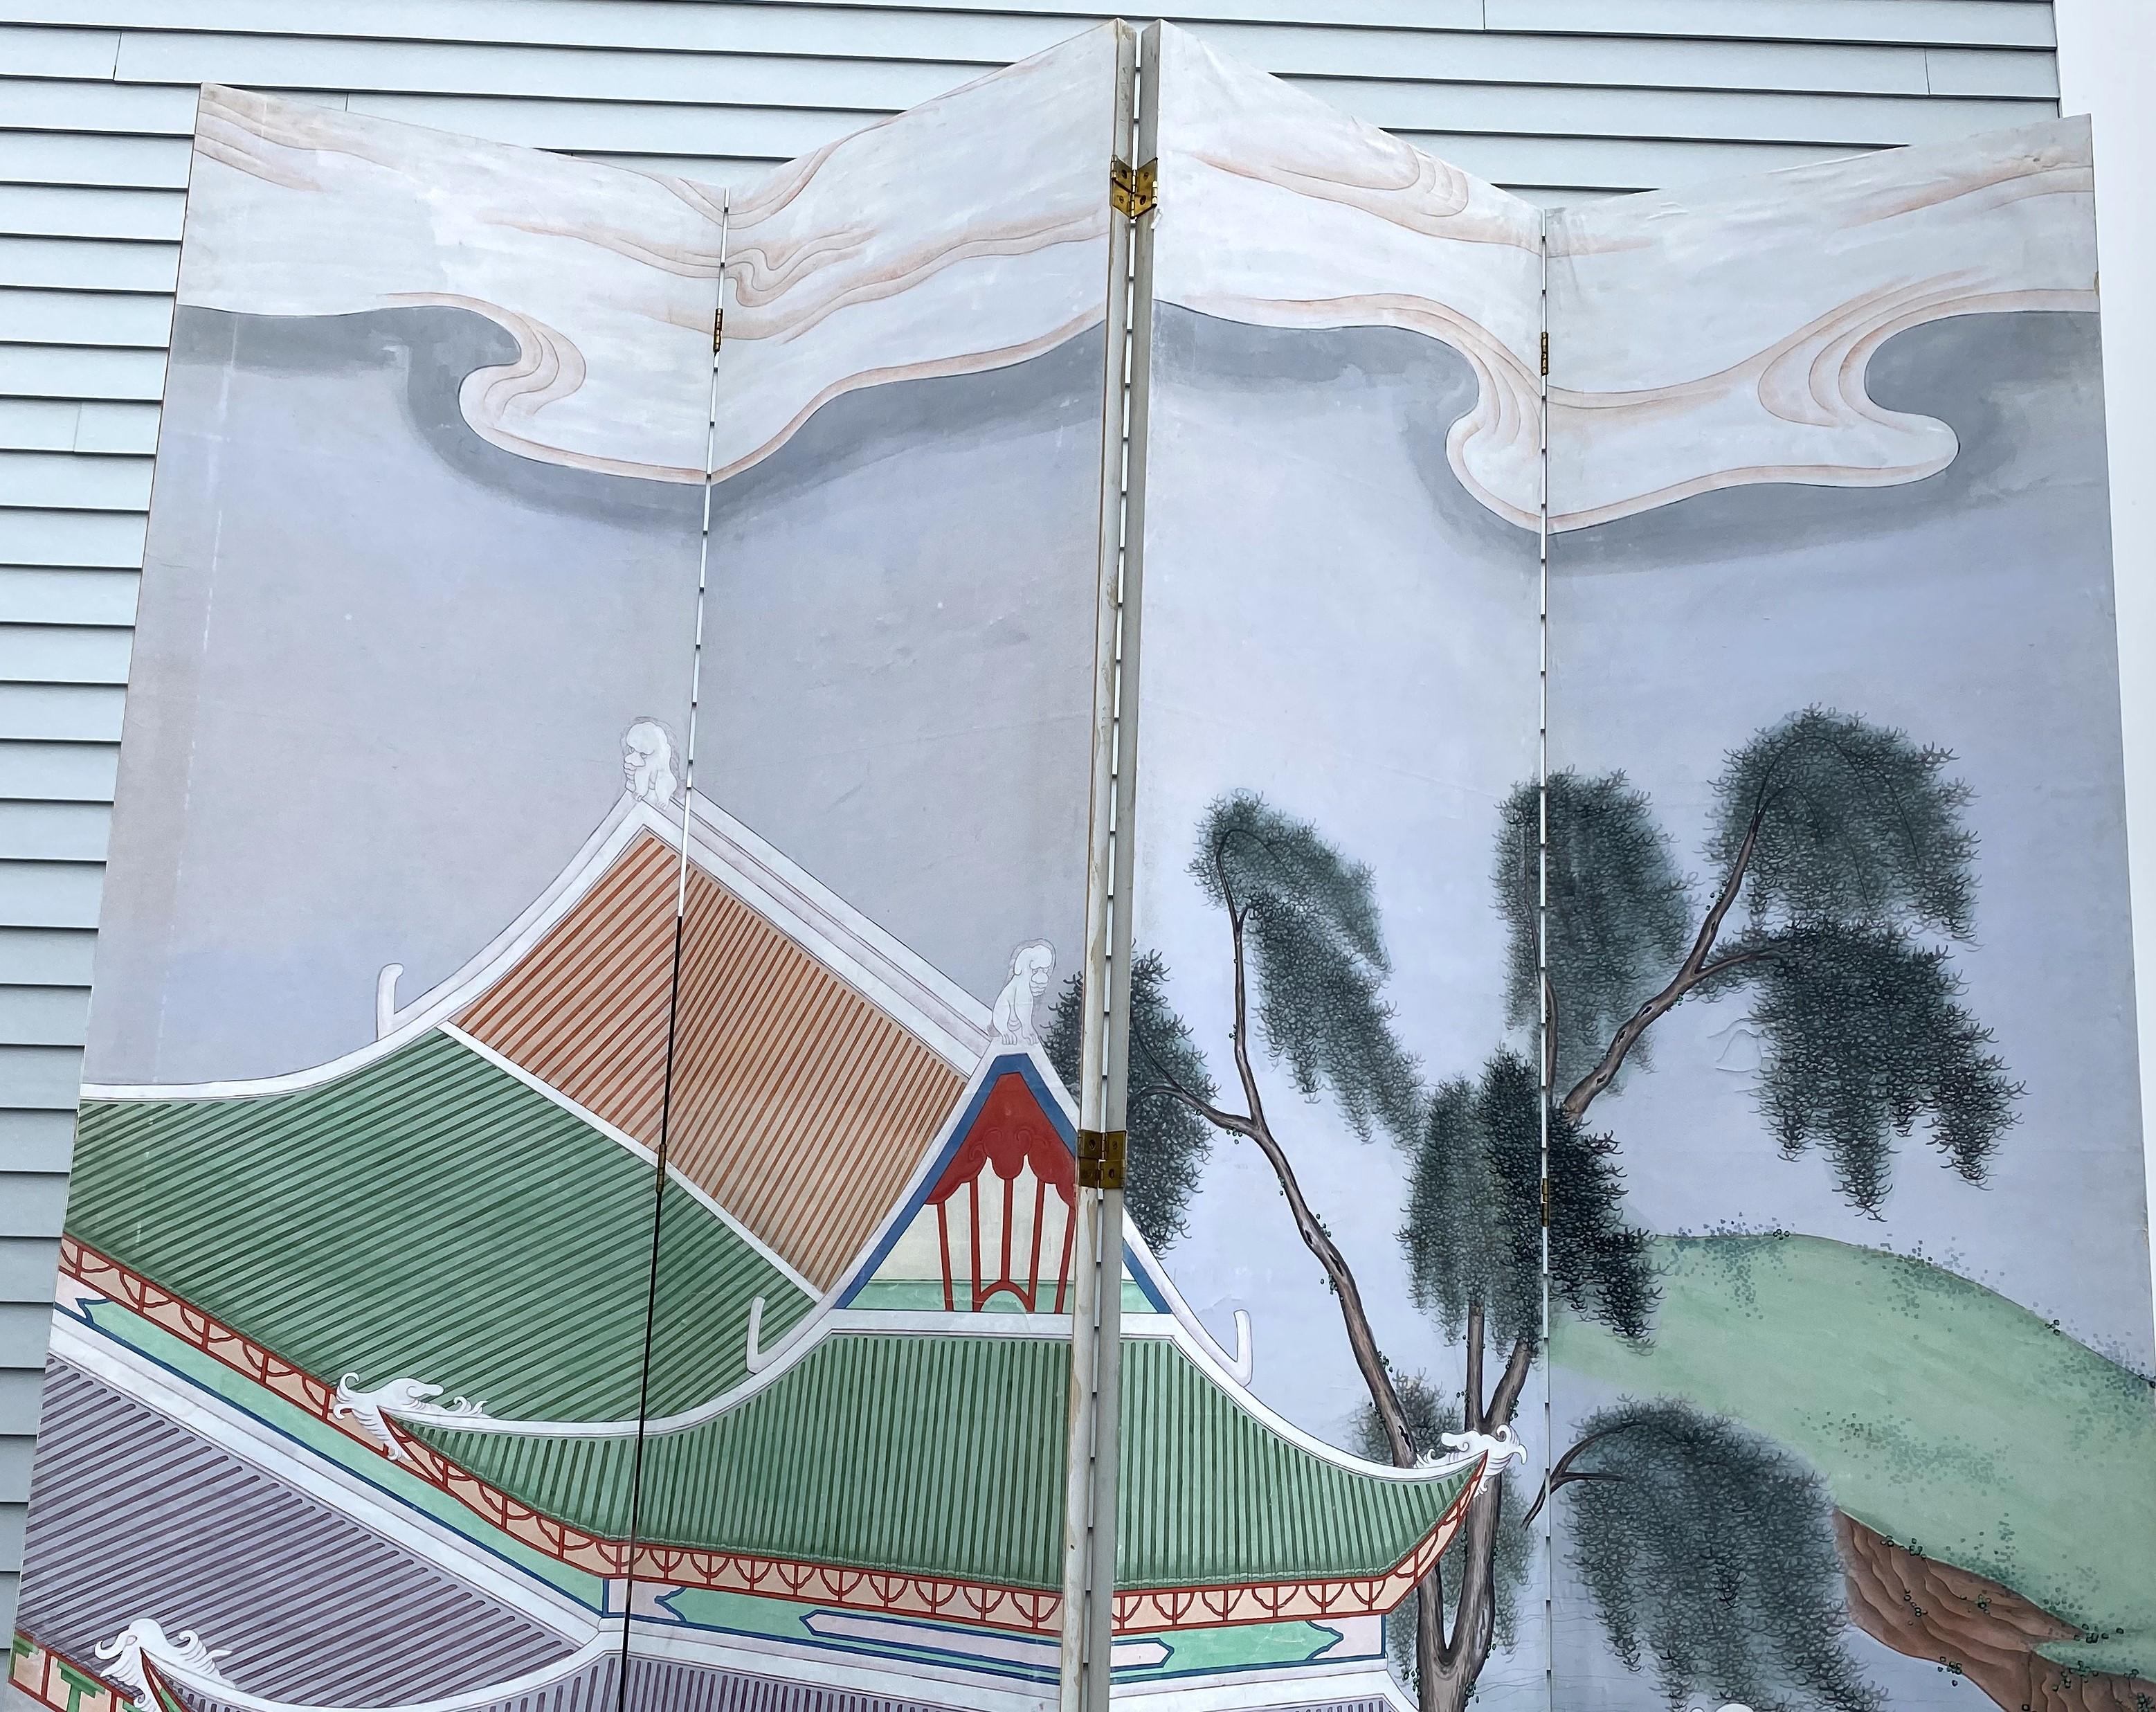 Paravent monumental chinois peint à la main sur toile polychrome et cadre en bois à quatre panneaux présentant des scènes de village et des personnages sur les deux côtés, avec des collines ondulantes et des arbres. Le paravent date du début ou du